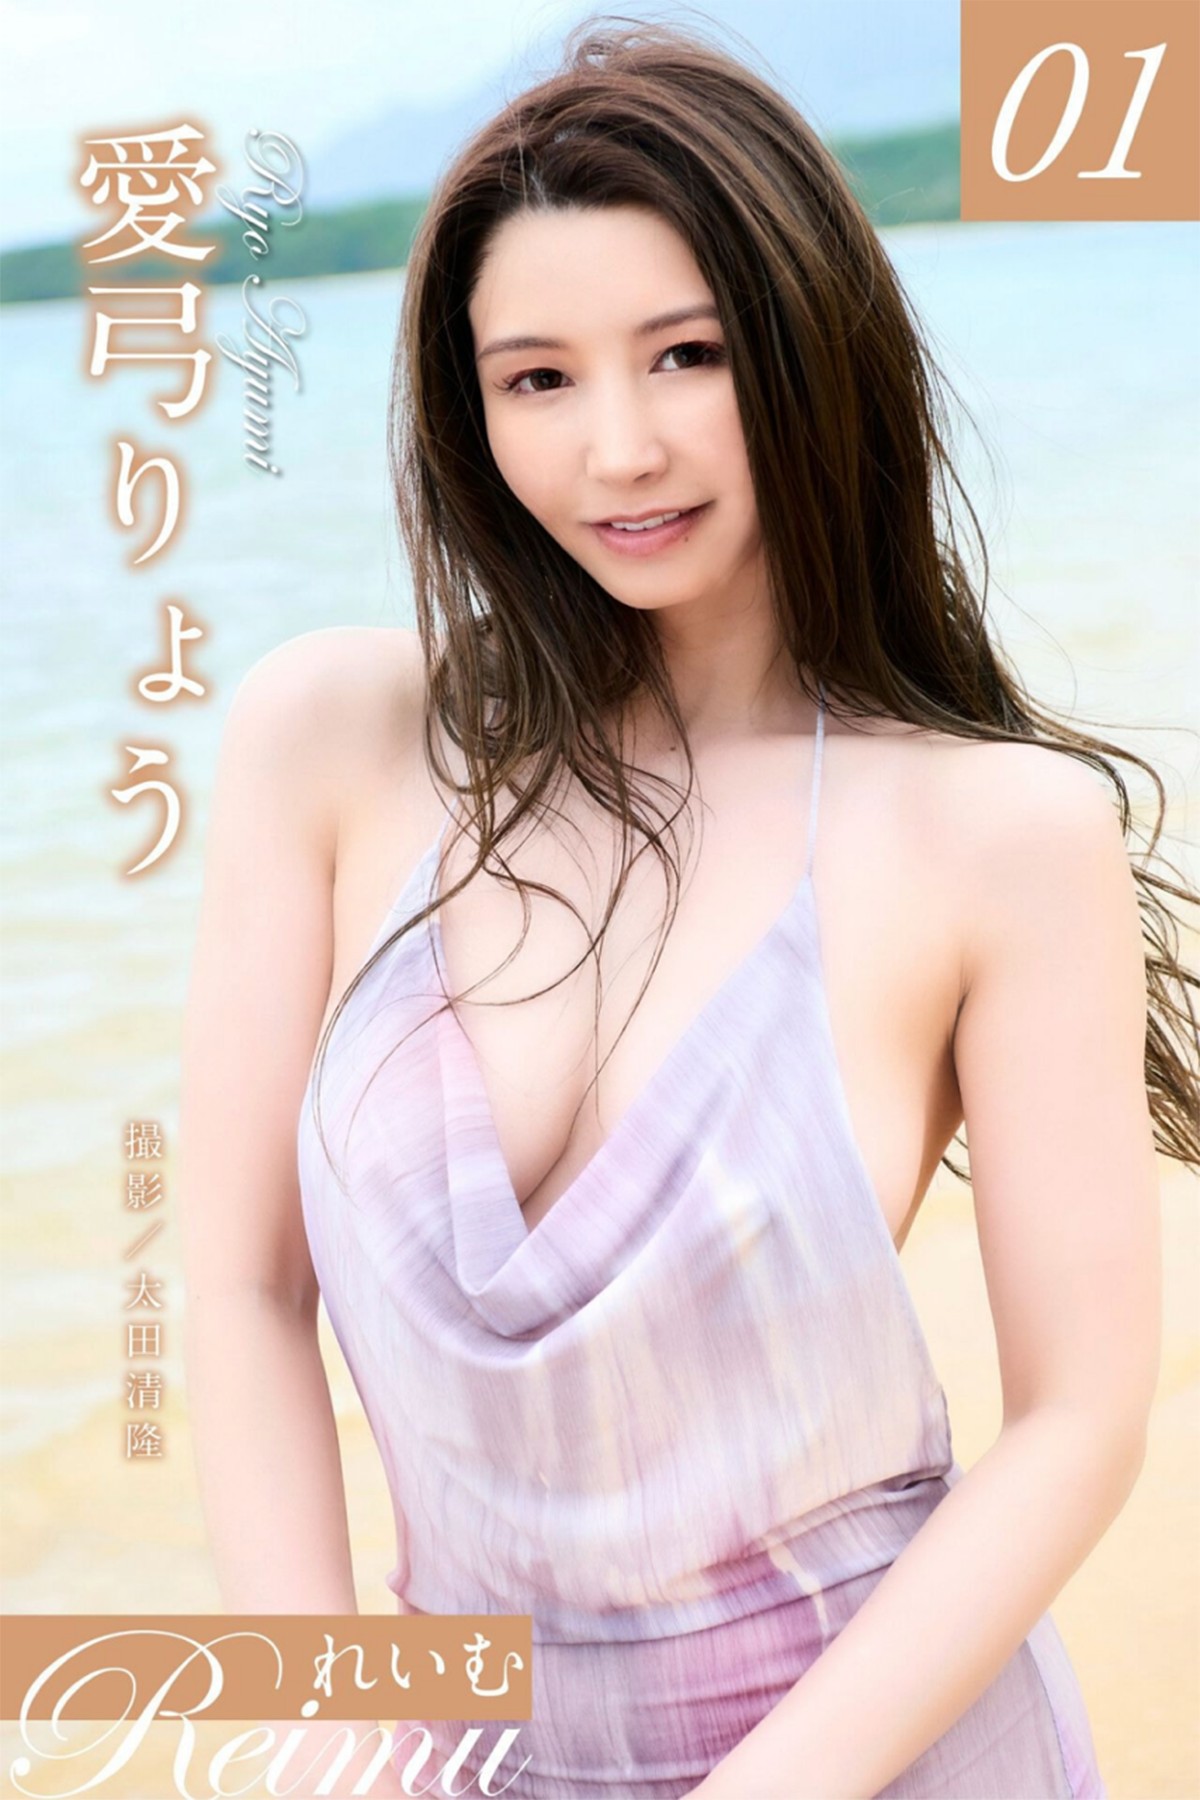 Photobook Reimu Ayumi Miura 愛弓りょう Vol.1 A